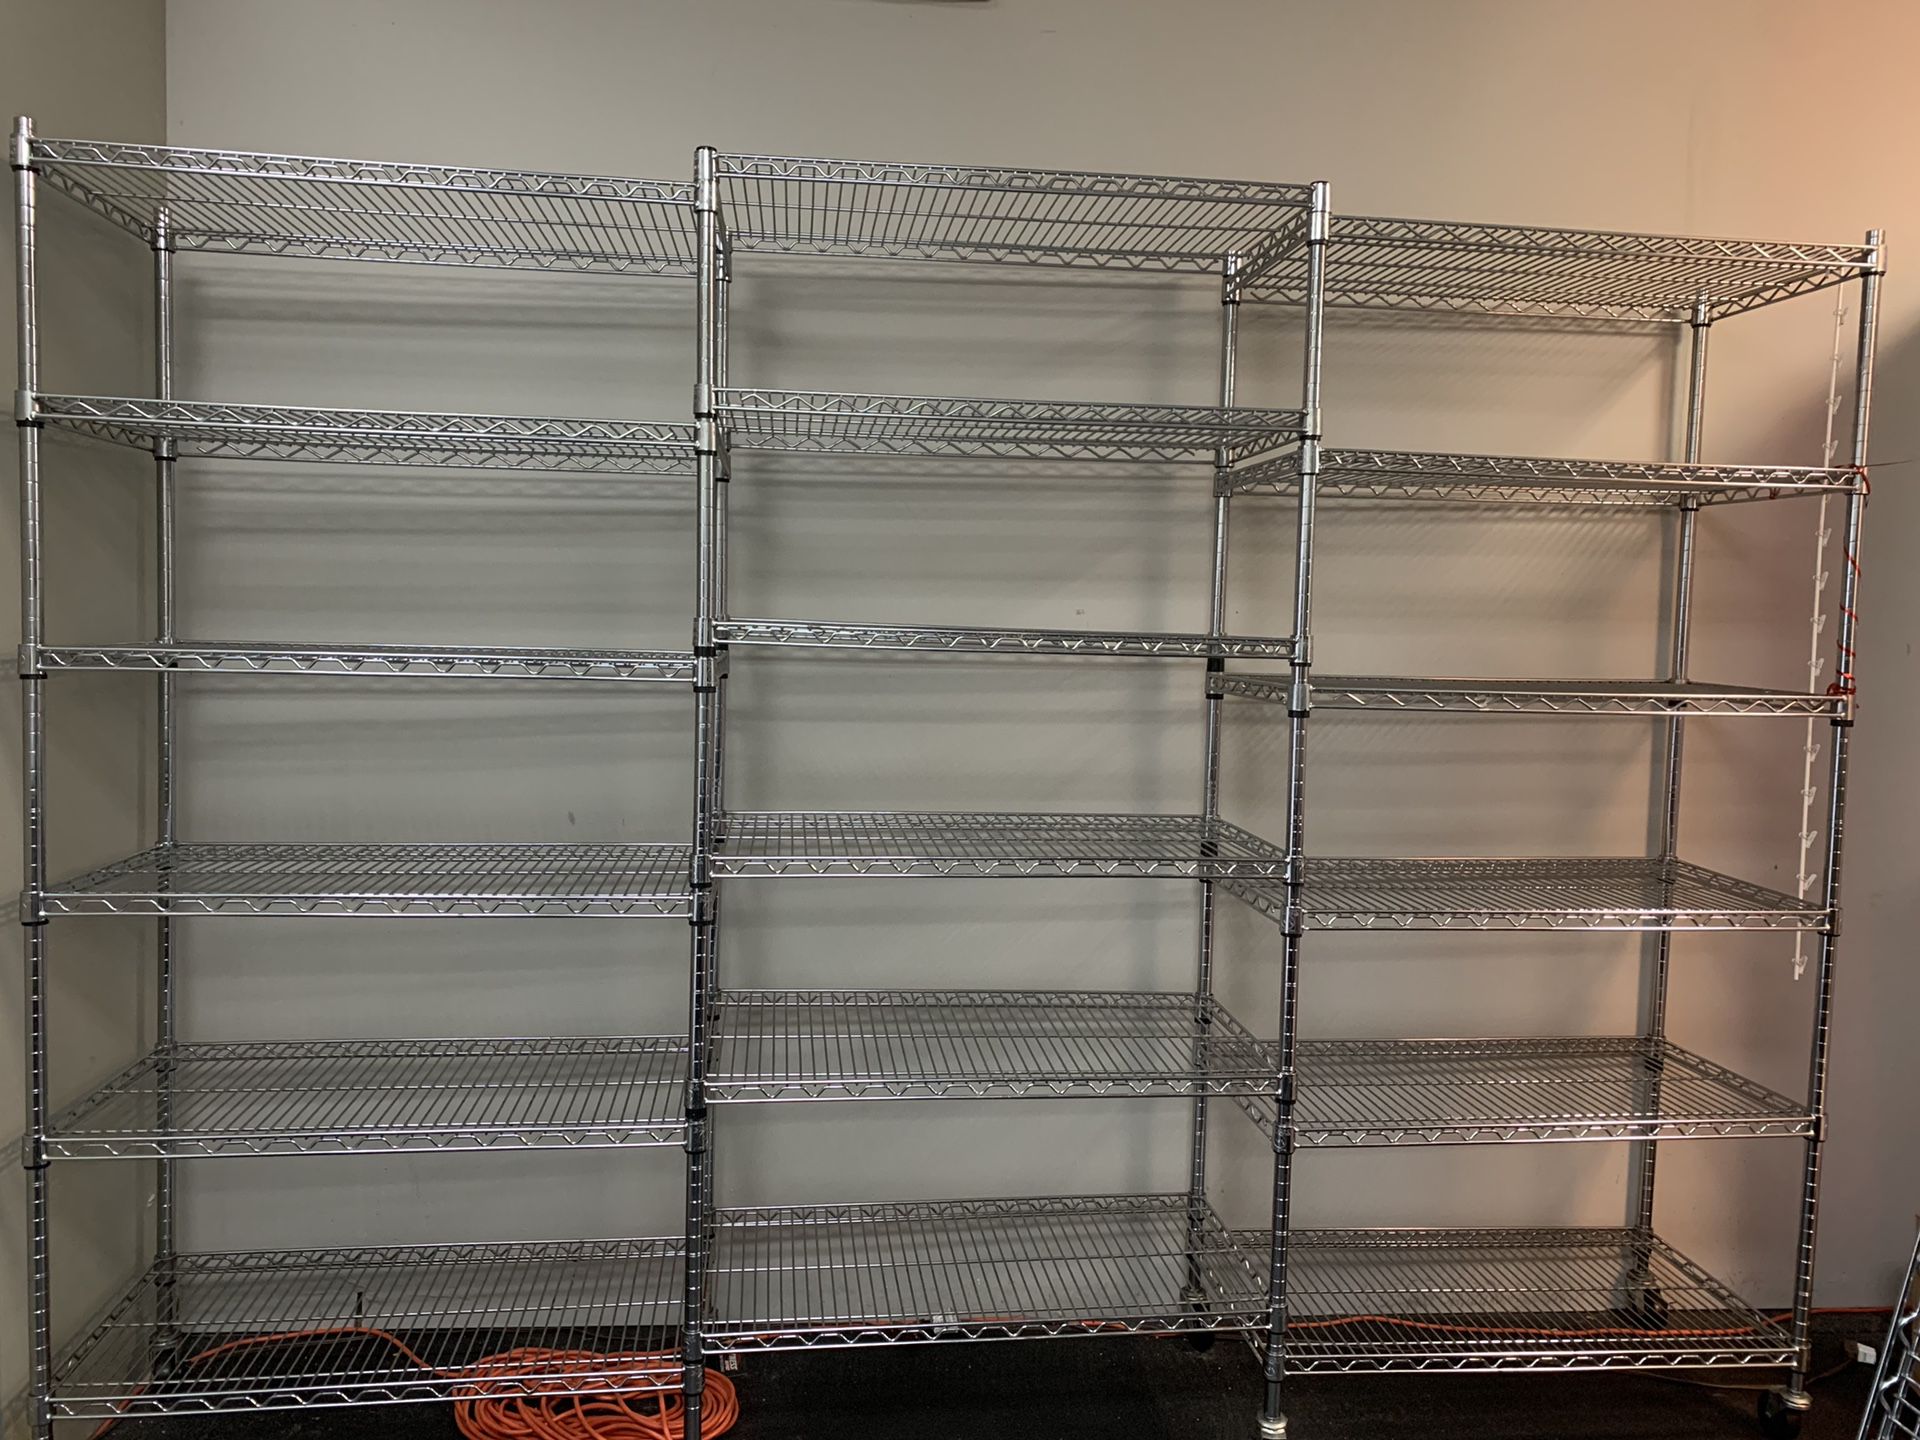 3 Metal Racks connected/ 6 Shelves each Storage